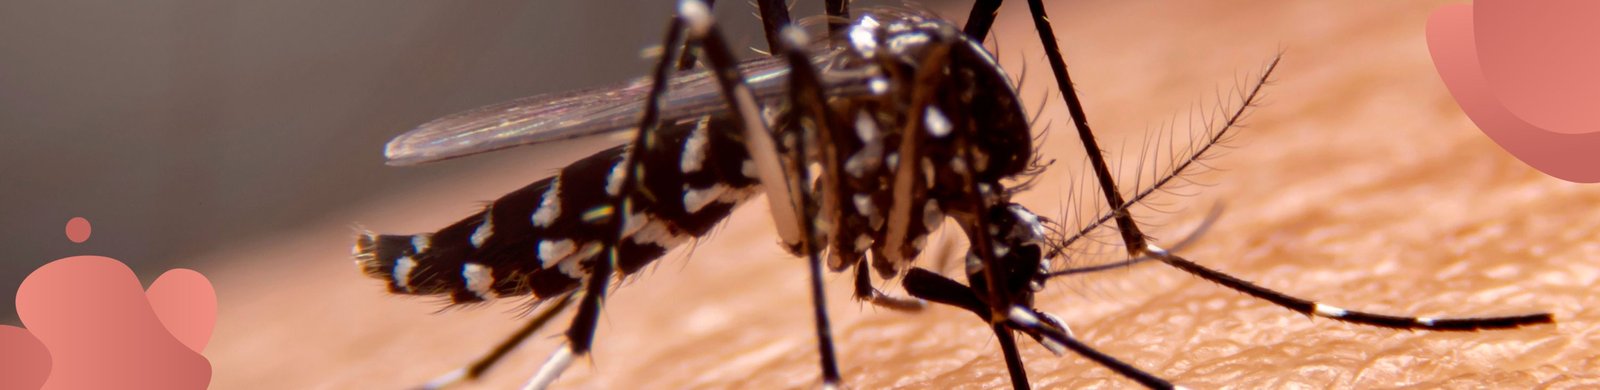 Aspectos eco- epidemiológicos y sociales de enfermedades transmitidas por insectos hematófagos de importancia sanitaria.jpg